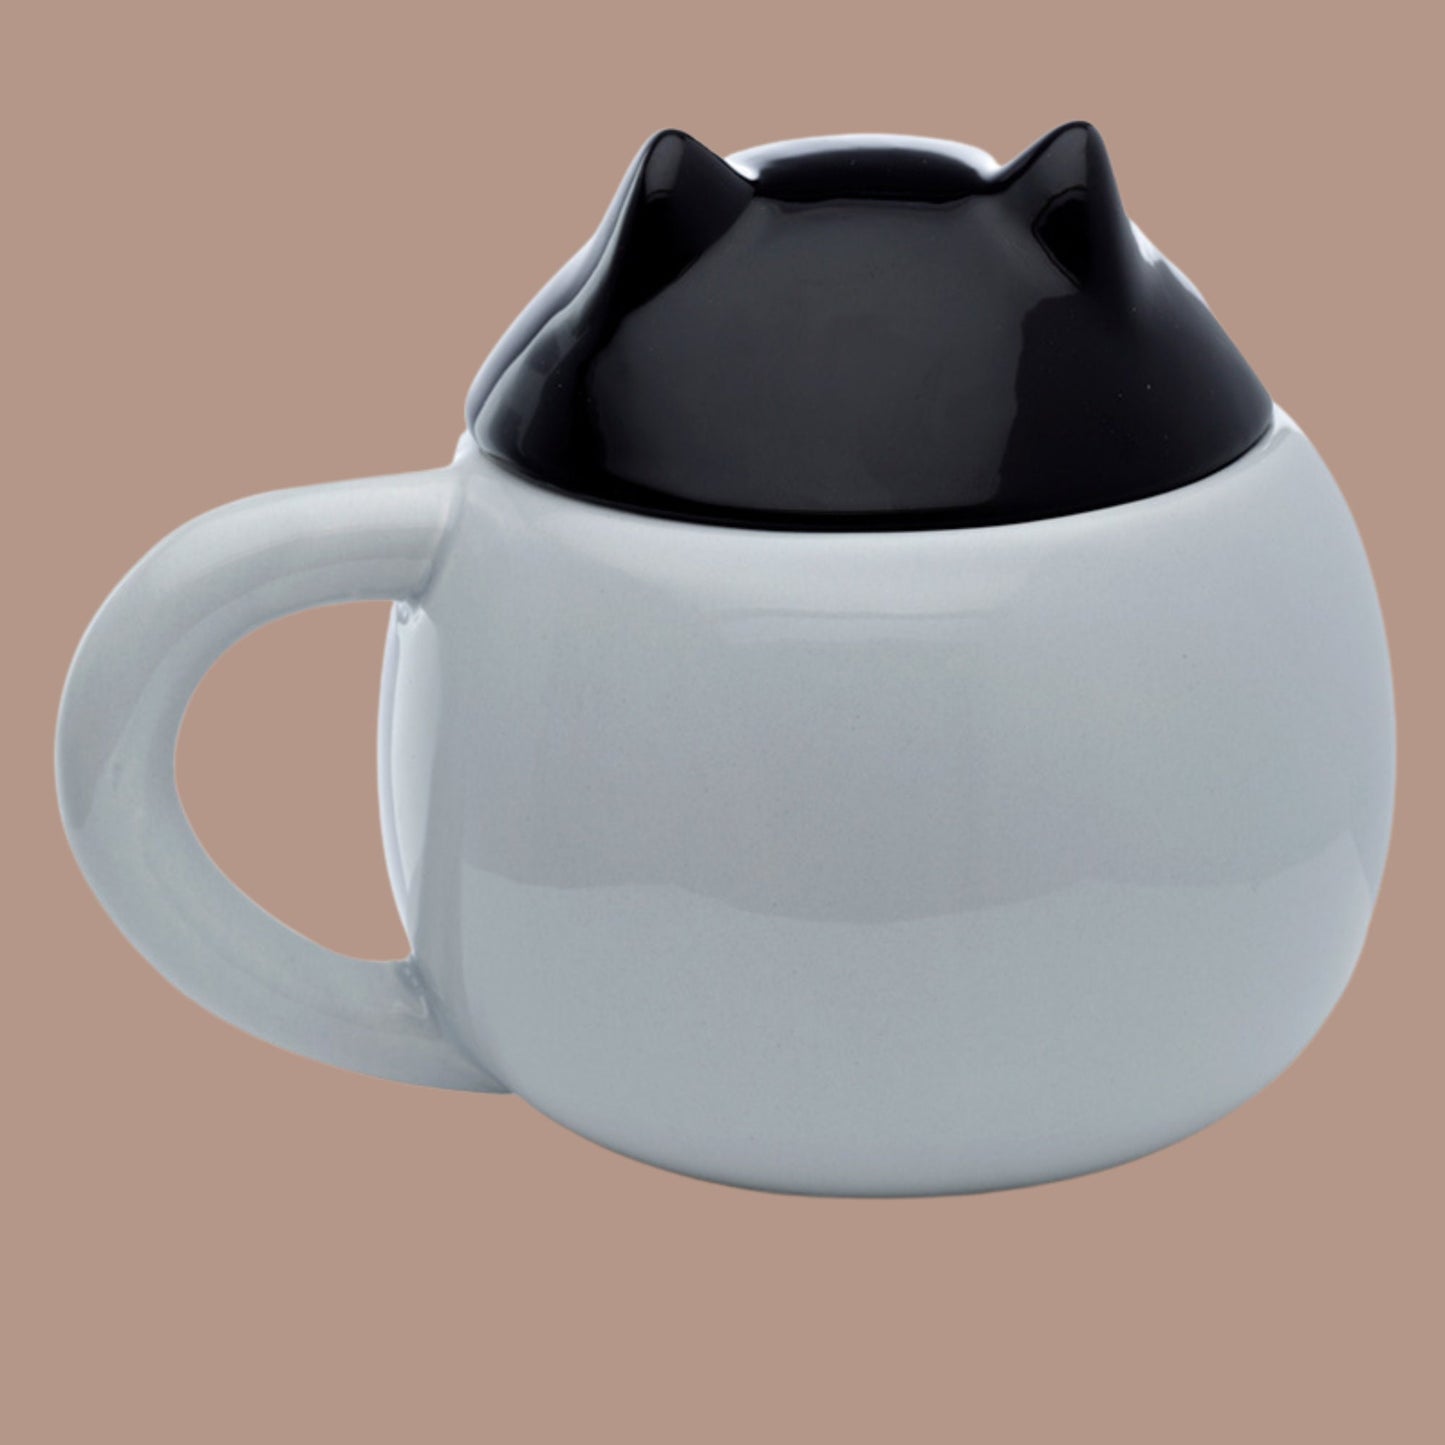 Cute Cat Lidded Mug Ceramic Lidded Cat Mug Animal Mug Feline Lover Gift Mug Family Pet Present Fun Peeping Cat Coffee Cup Fun Cat Present